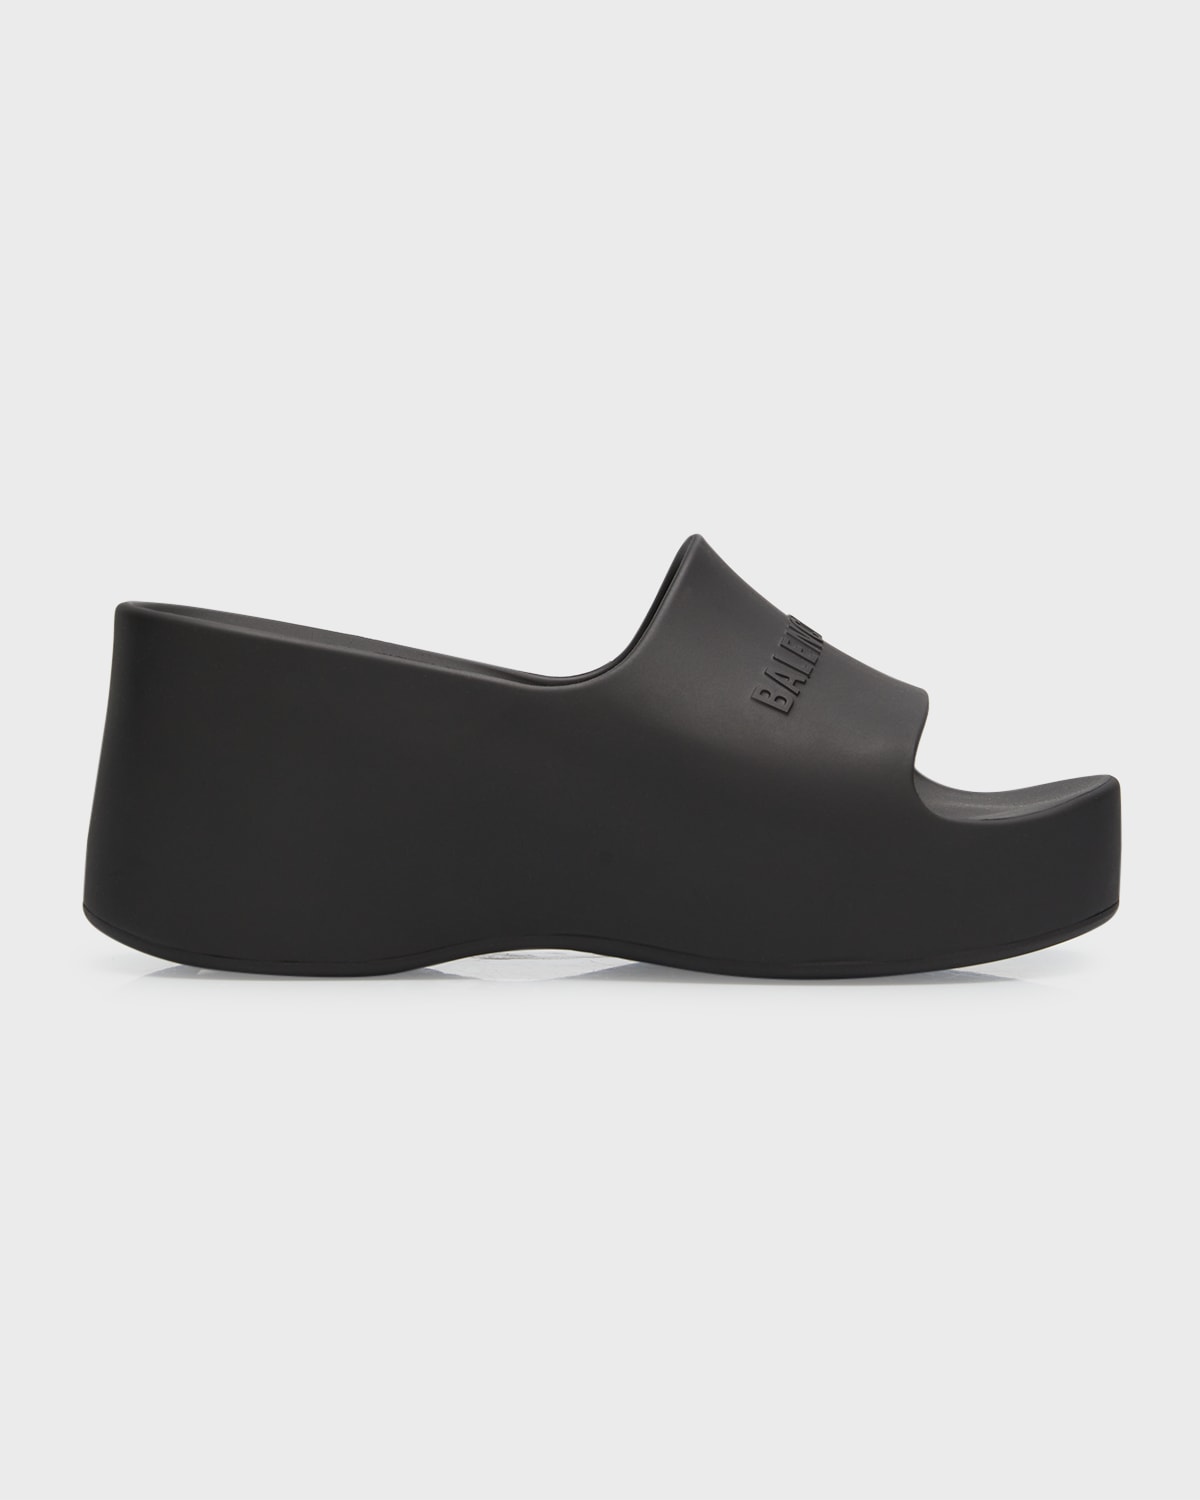 2022正規激安】【2022正規激安】 バレンシアガ レディース サンダル シューズ Camden 160mm Sandal With Rhinestones  Black レディース靴